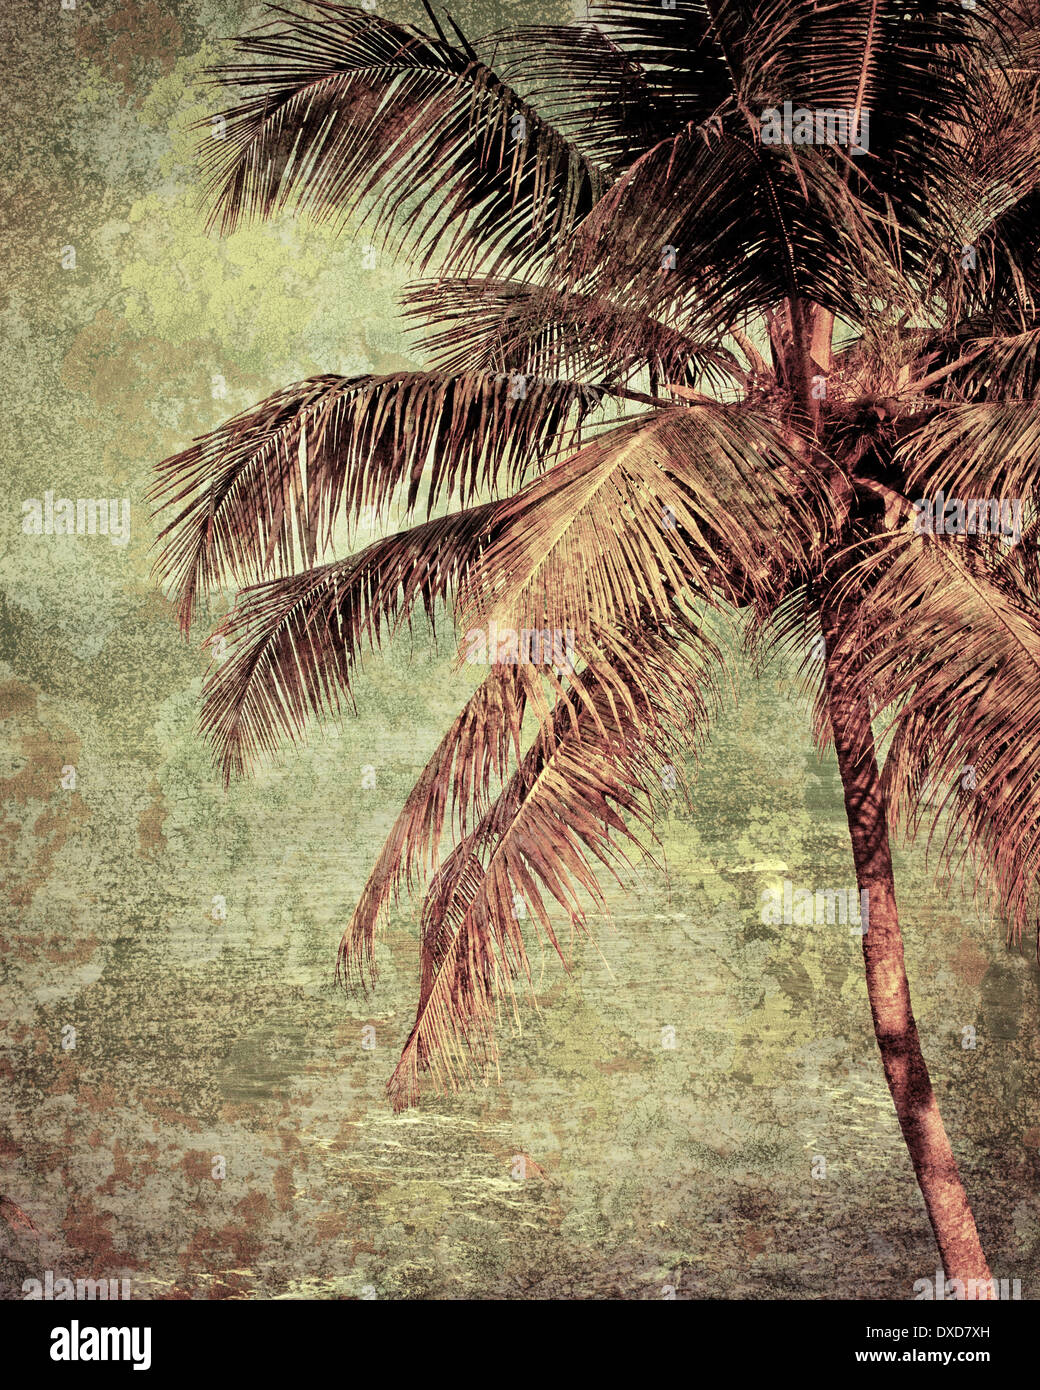 Bellissimo paesaggio tropicale con spiaggia dell'oceano e Palm tree sotto golden sunset sky. Immagine in stile vintage. India Foto Stock